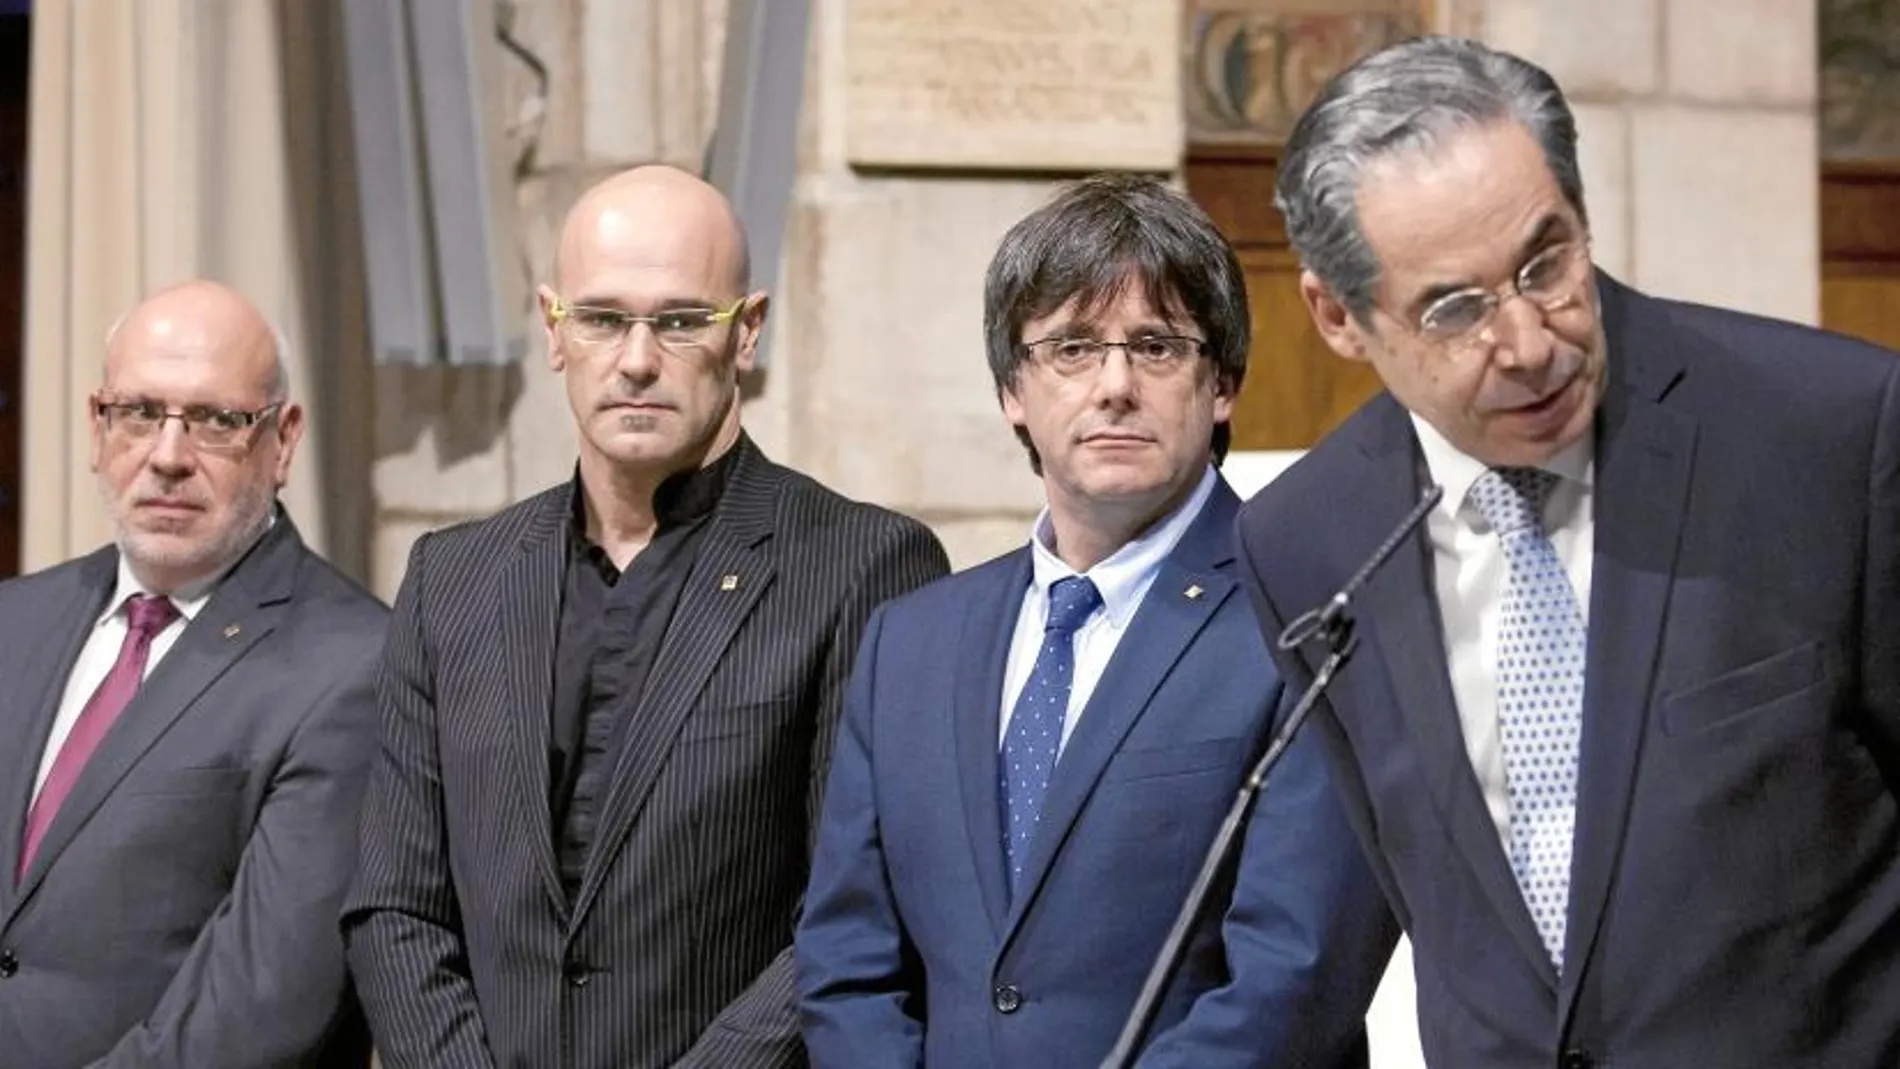 El president de la Generalitat recibe al cuerpo consular, en la imagen con Romeva, Baiget y el cónsul decano de Paraguay